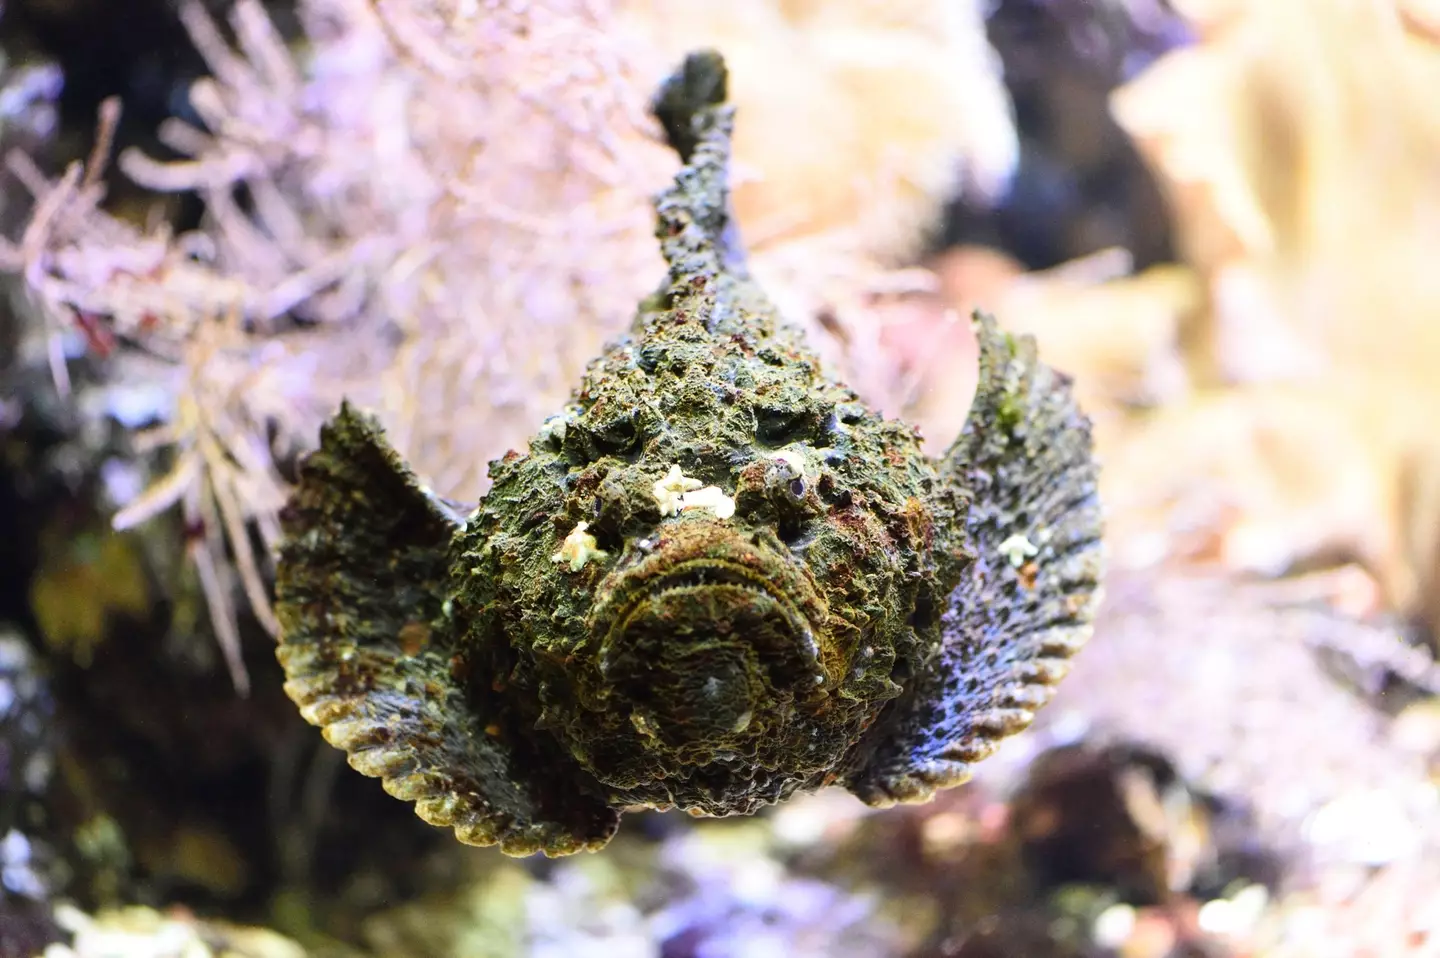 Stonefish in an aquarium.